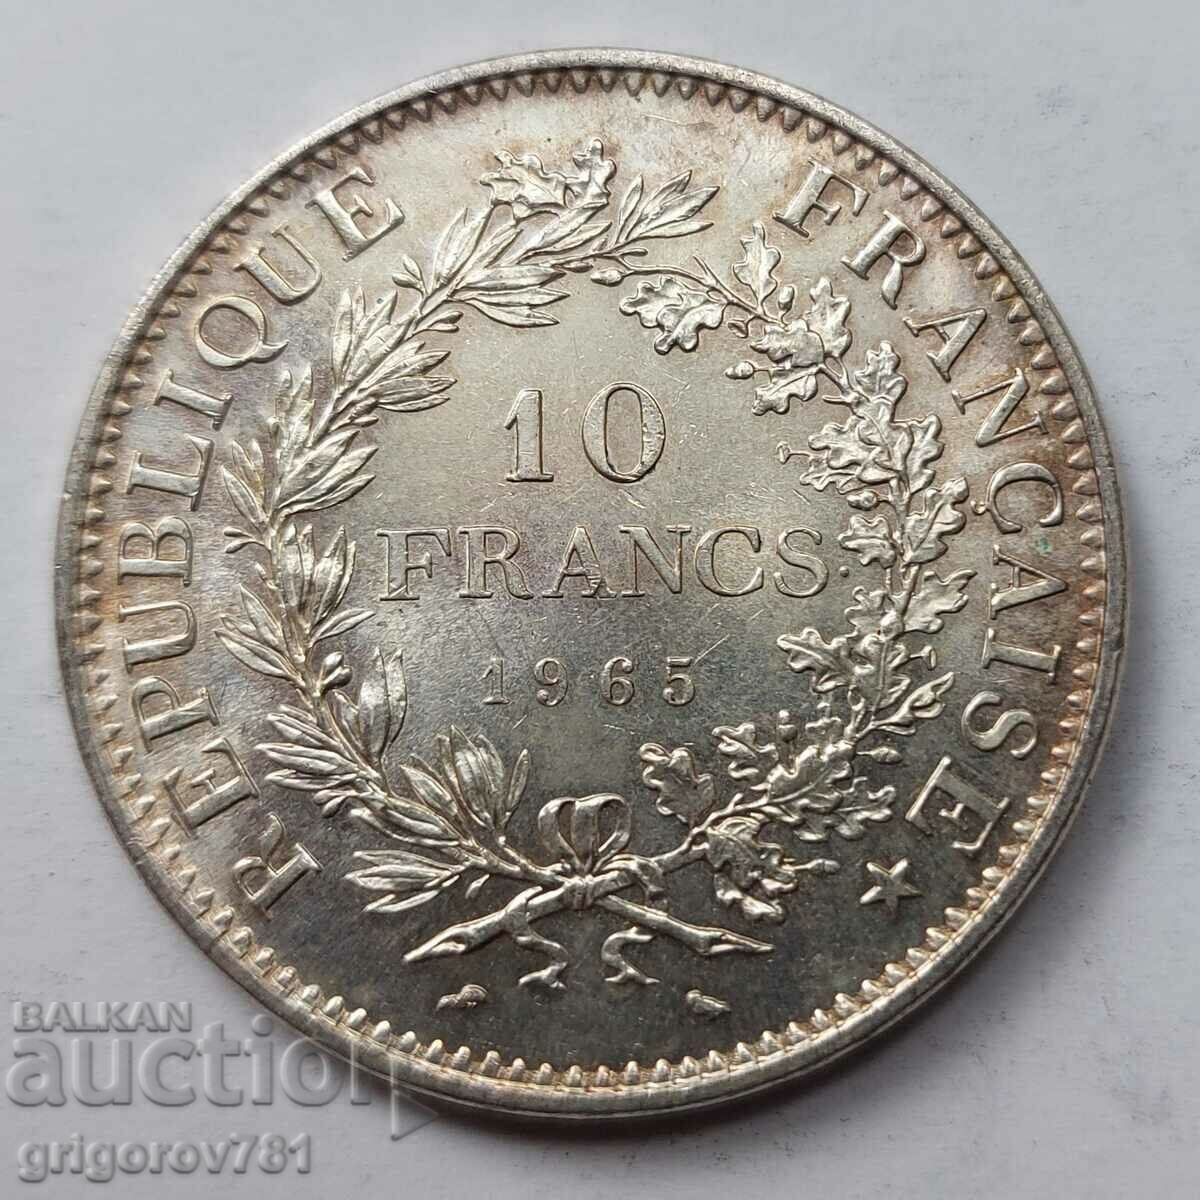 10 Φράγκα Ασήμι Γαλλία 1965 - Ασημένιο νόμισμα #53